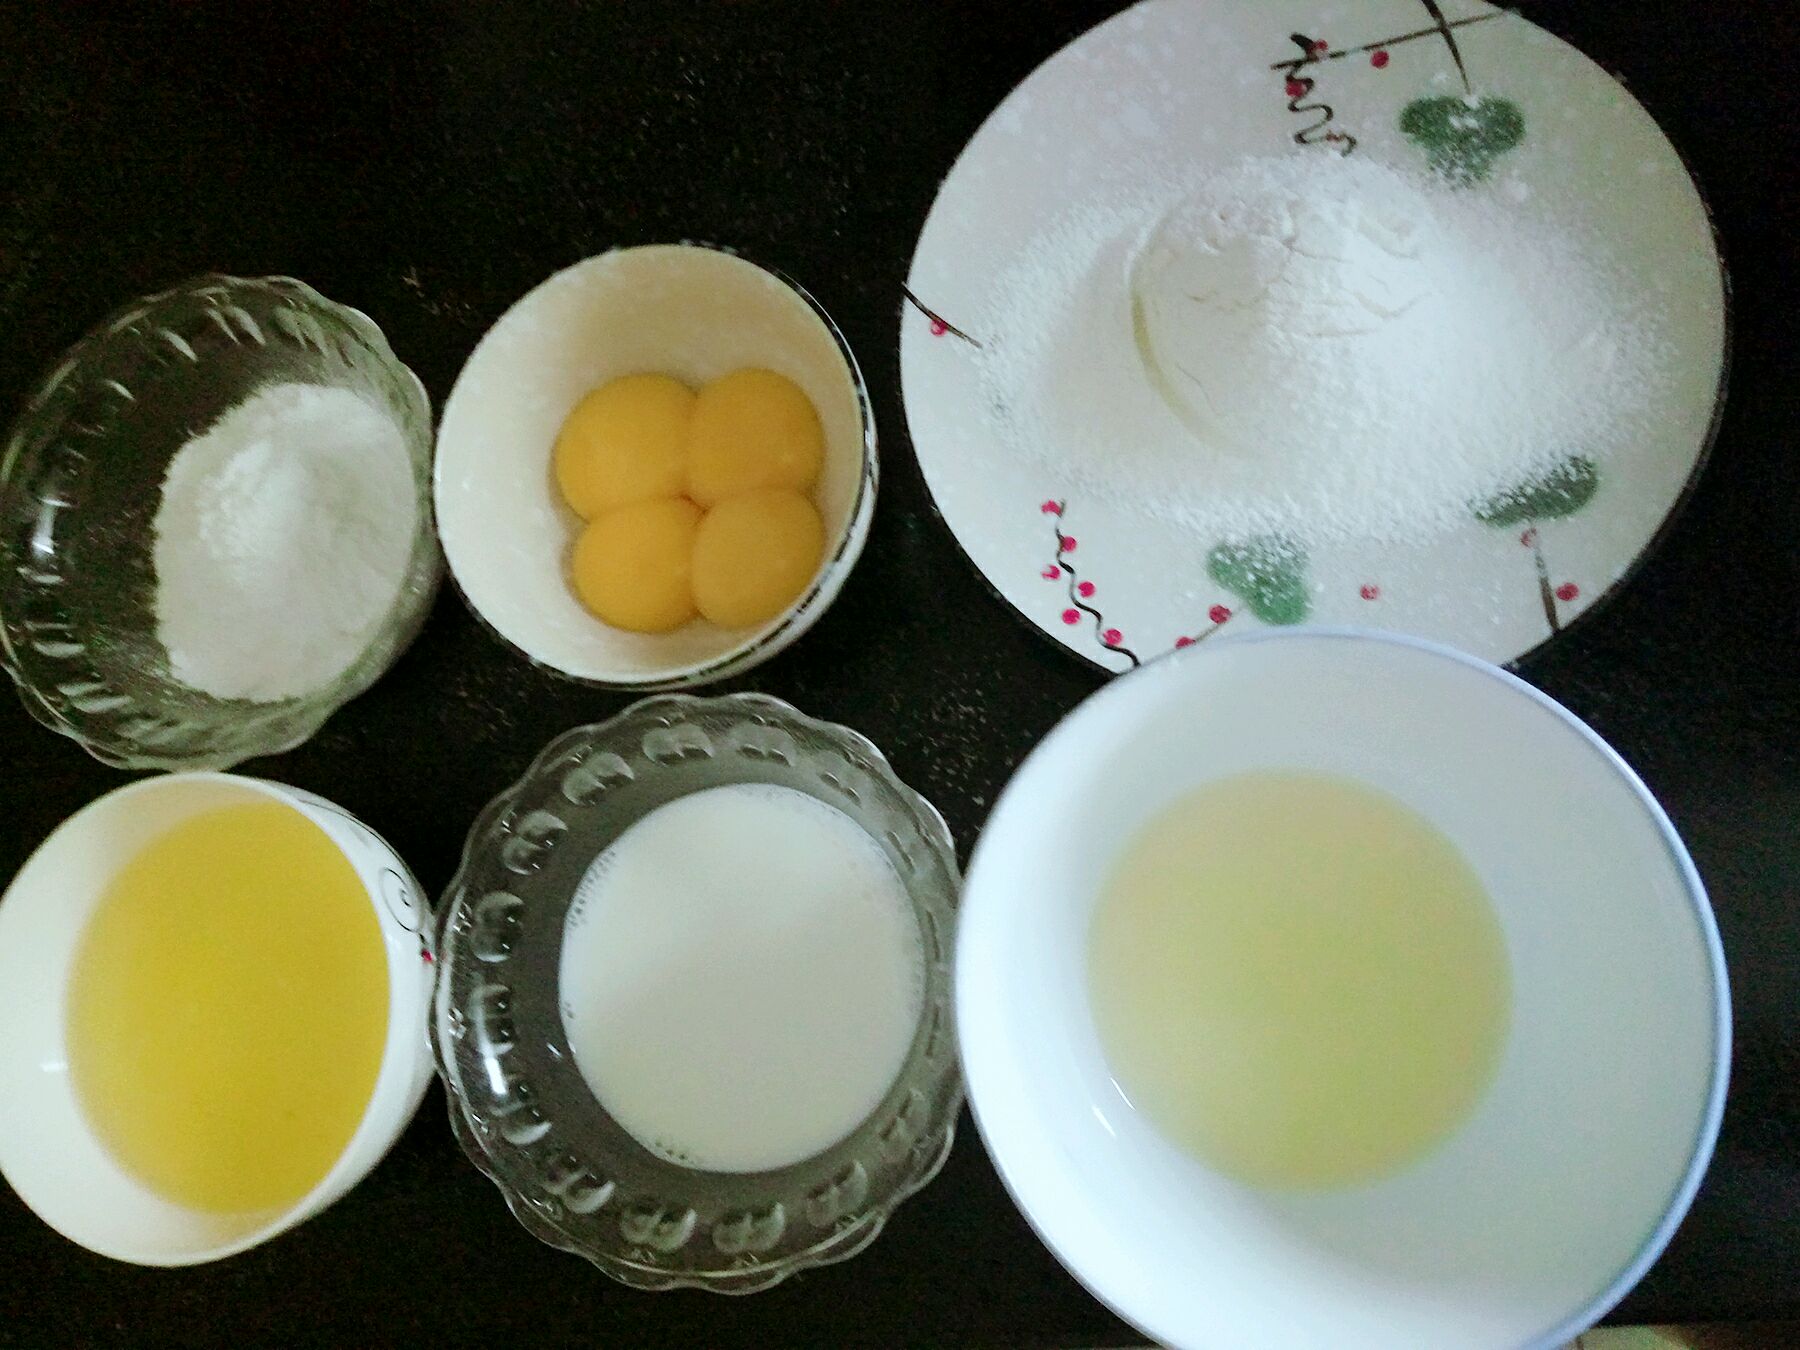 一,先准备好做蛋糕的材料.蛋清蛋黄分离,低筋面粉过筛两次备用.